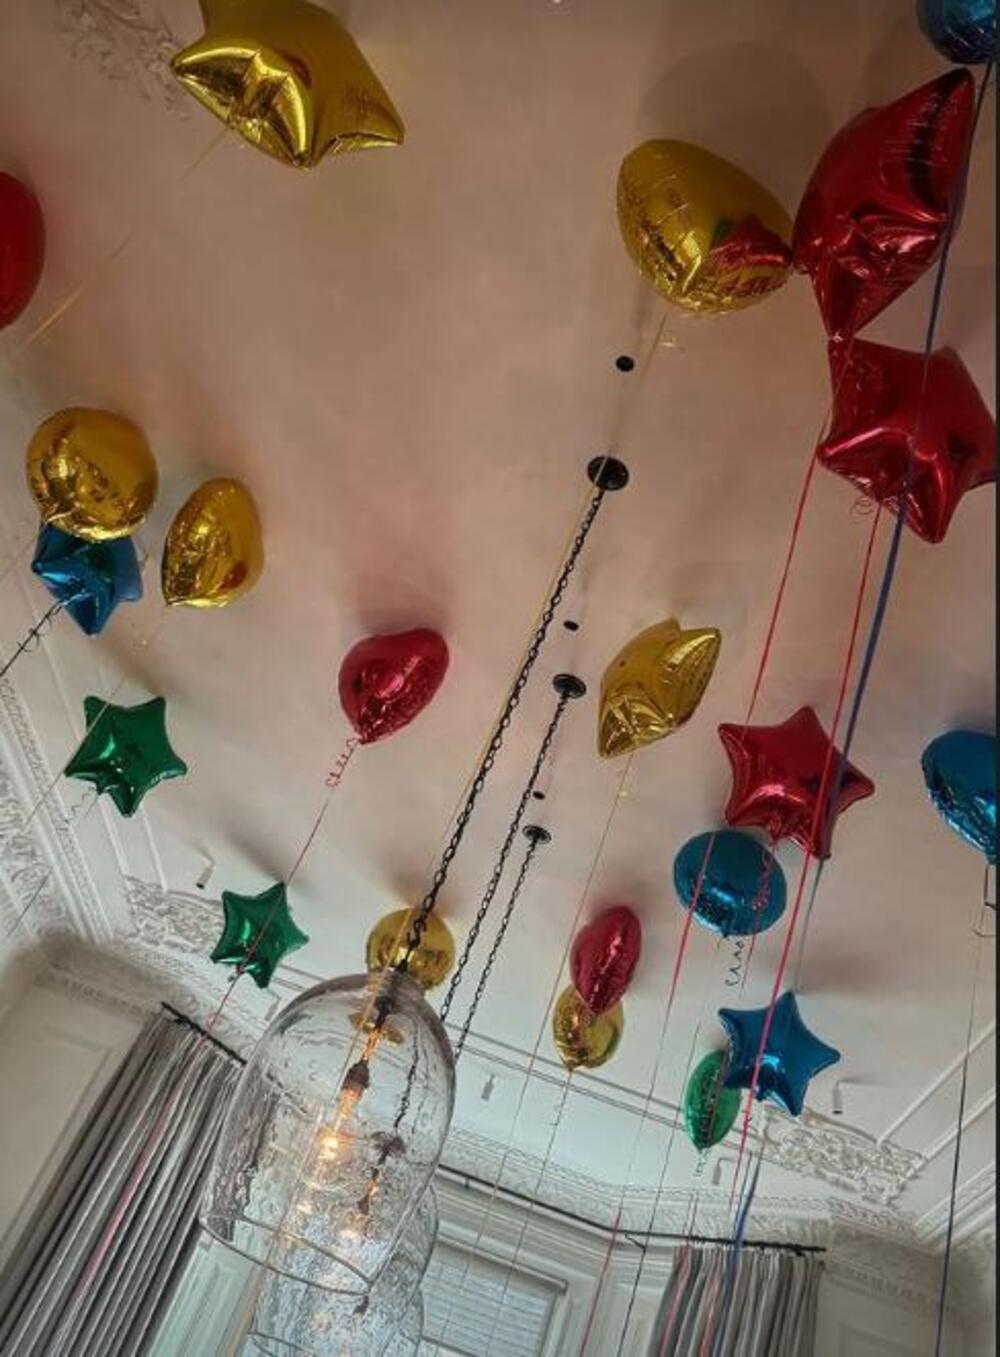 Viktorija je podelila sliku dekoracije za rođendan Dejvida Bekama